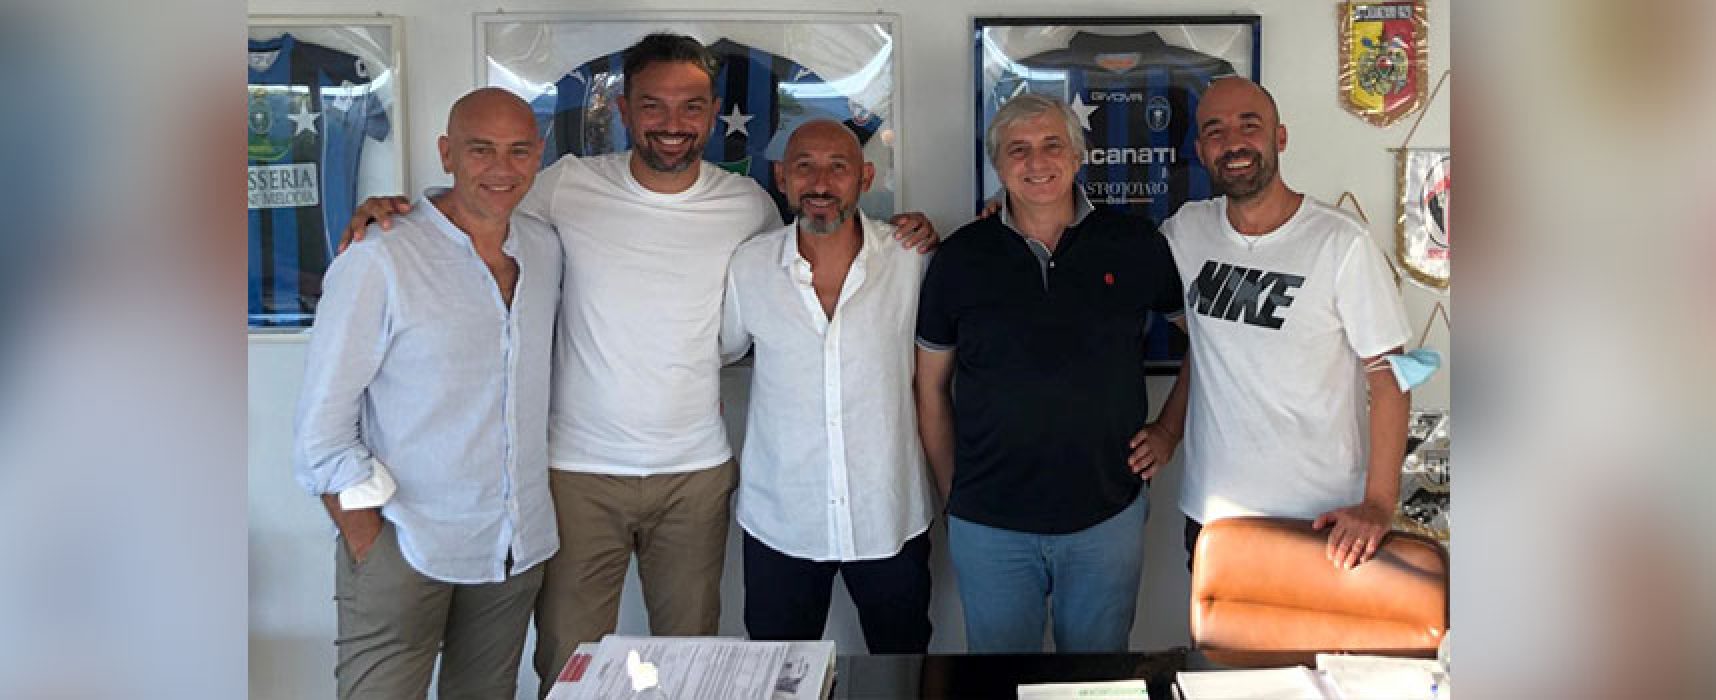 Ufficiale: Danilo Rufini è il nuovo allenatore del Bisceglie calcio